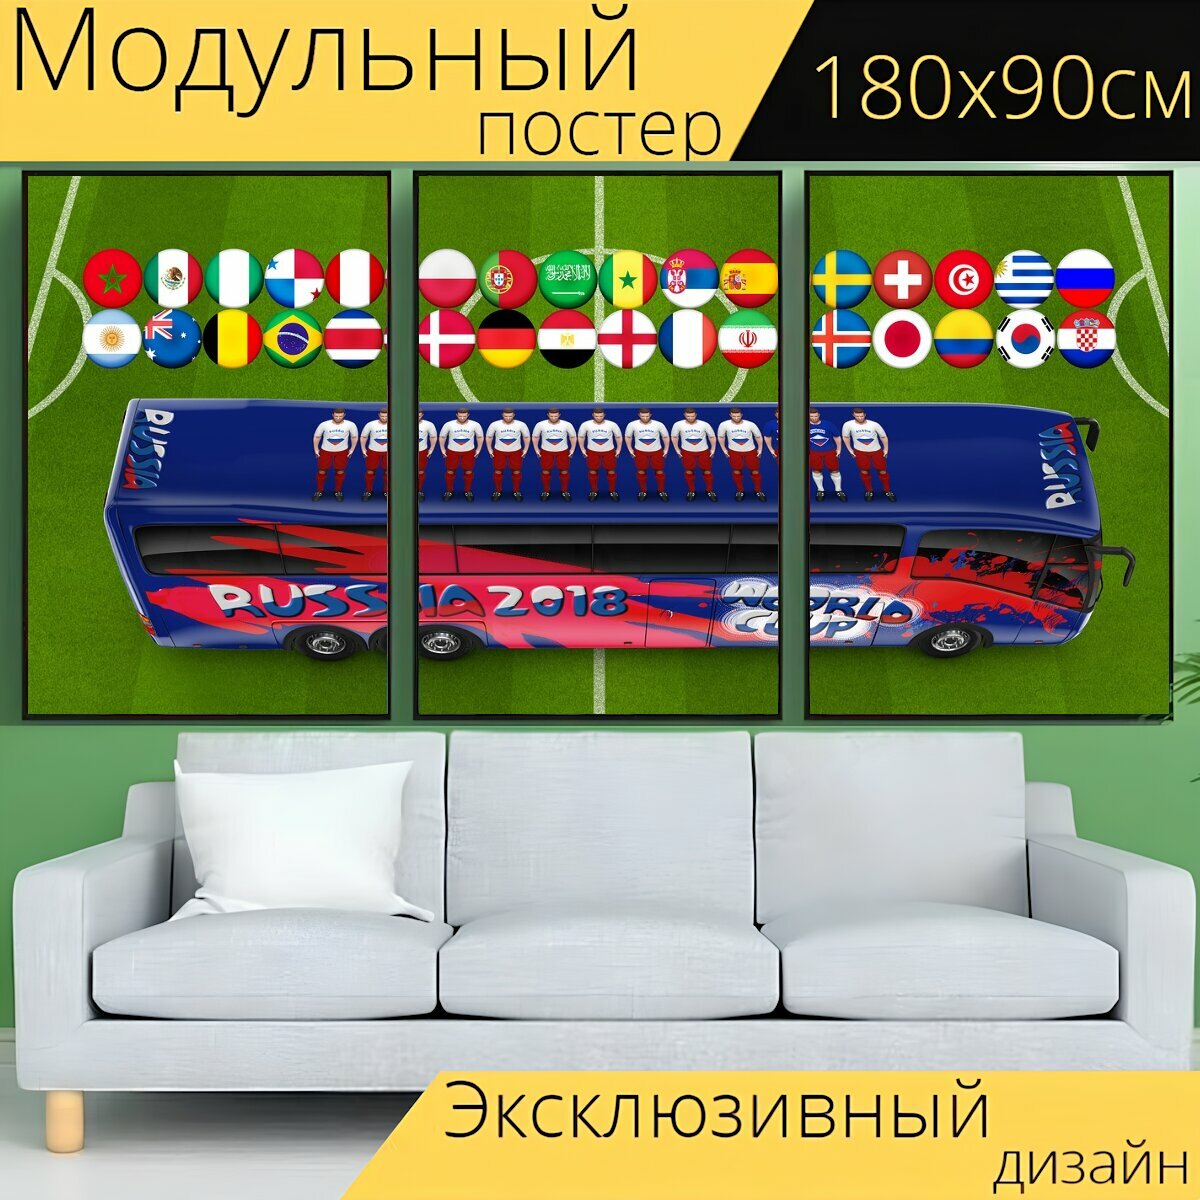 Модульный постер "Чемпионат мира по футболу , футбольный, россия " 180 x 90 см. для интерьера